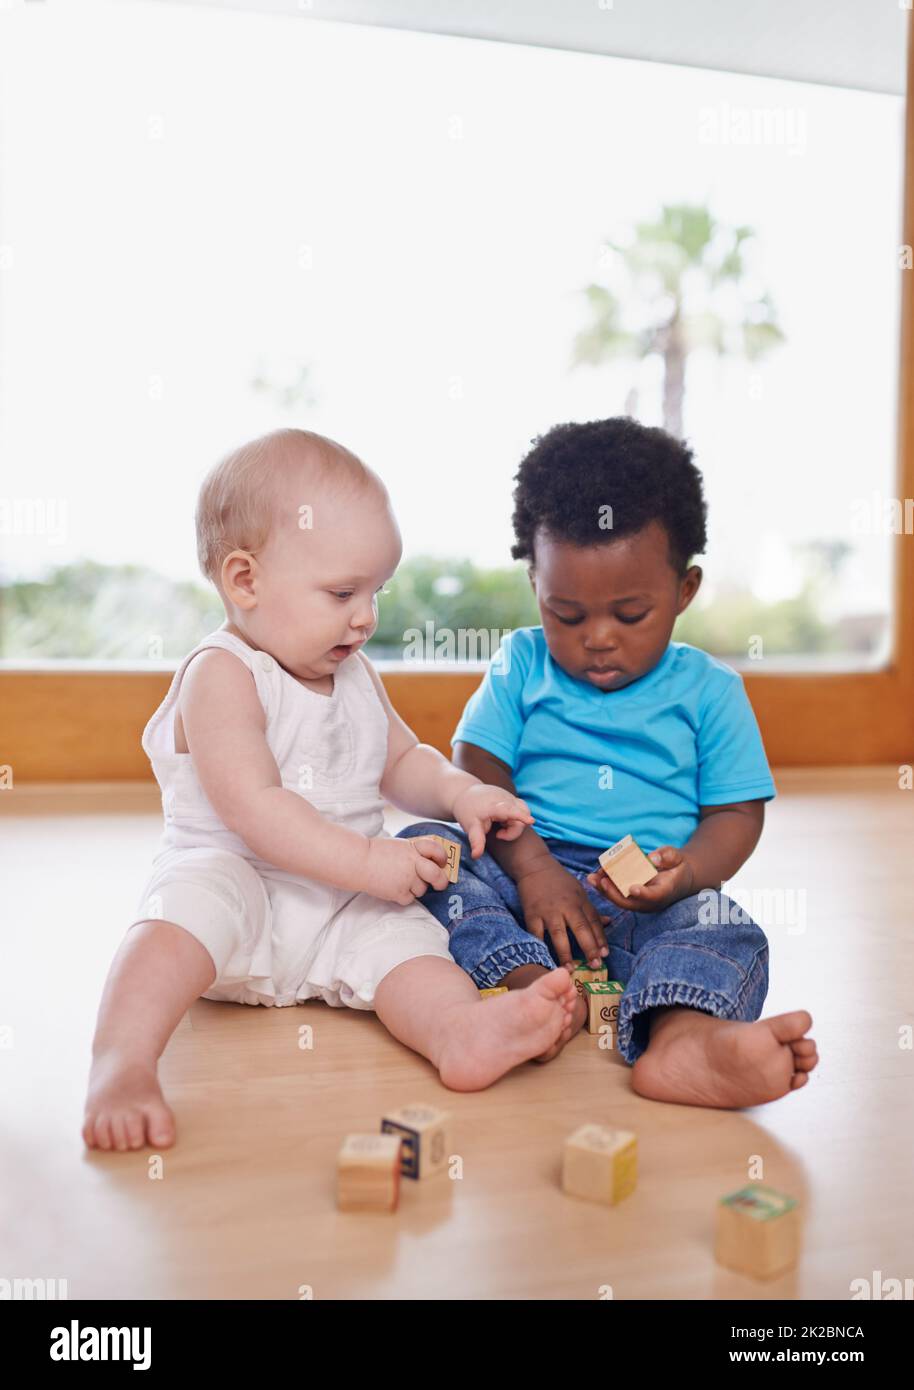 Apprendre et grandir ensemble. Une photo de deux adorables bébés jouant avec des blocs de construction. Banque D'Images